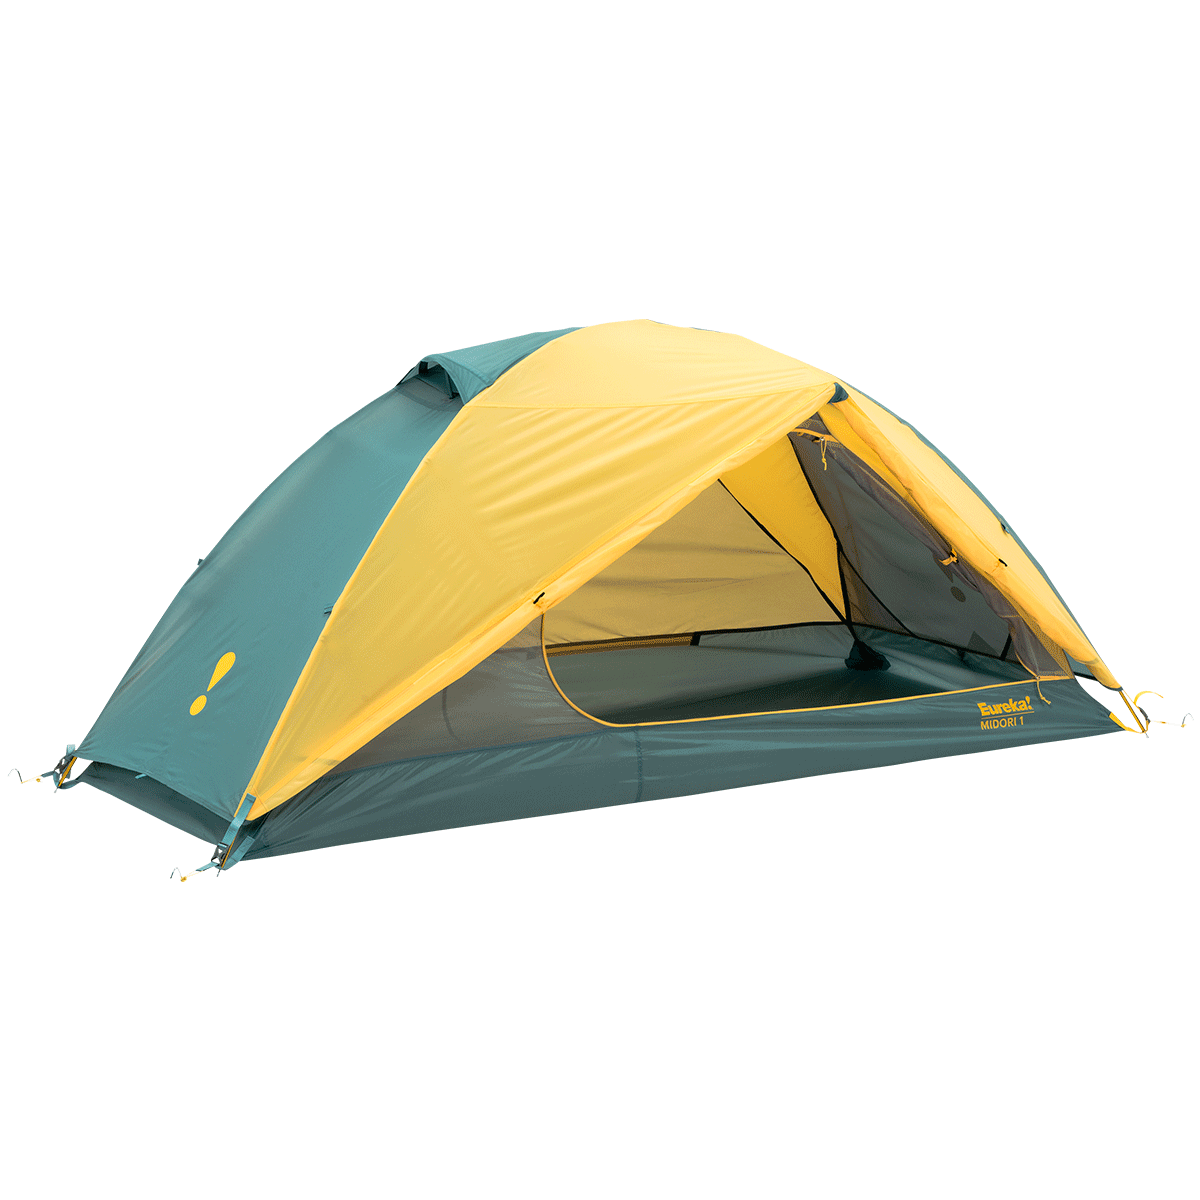 Eureka Midori 1 Tent